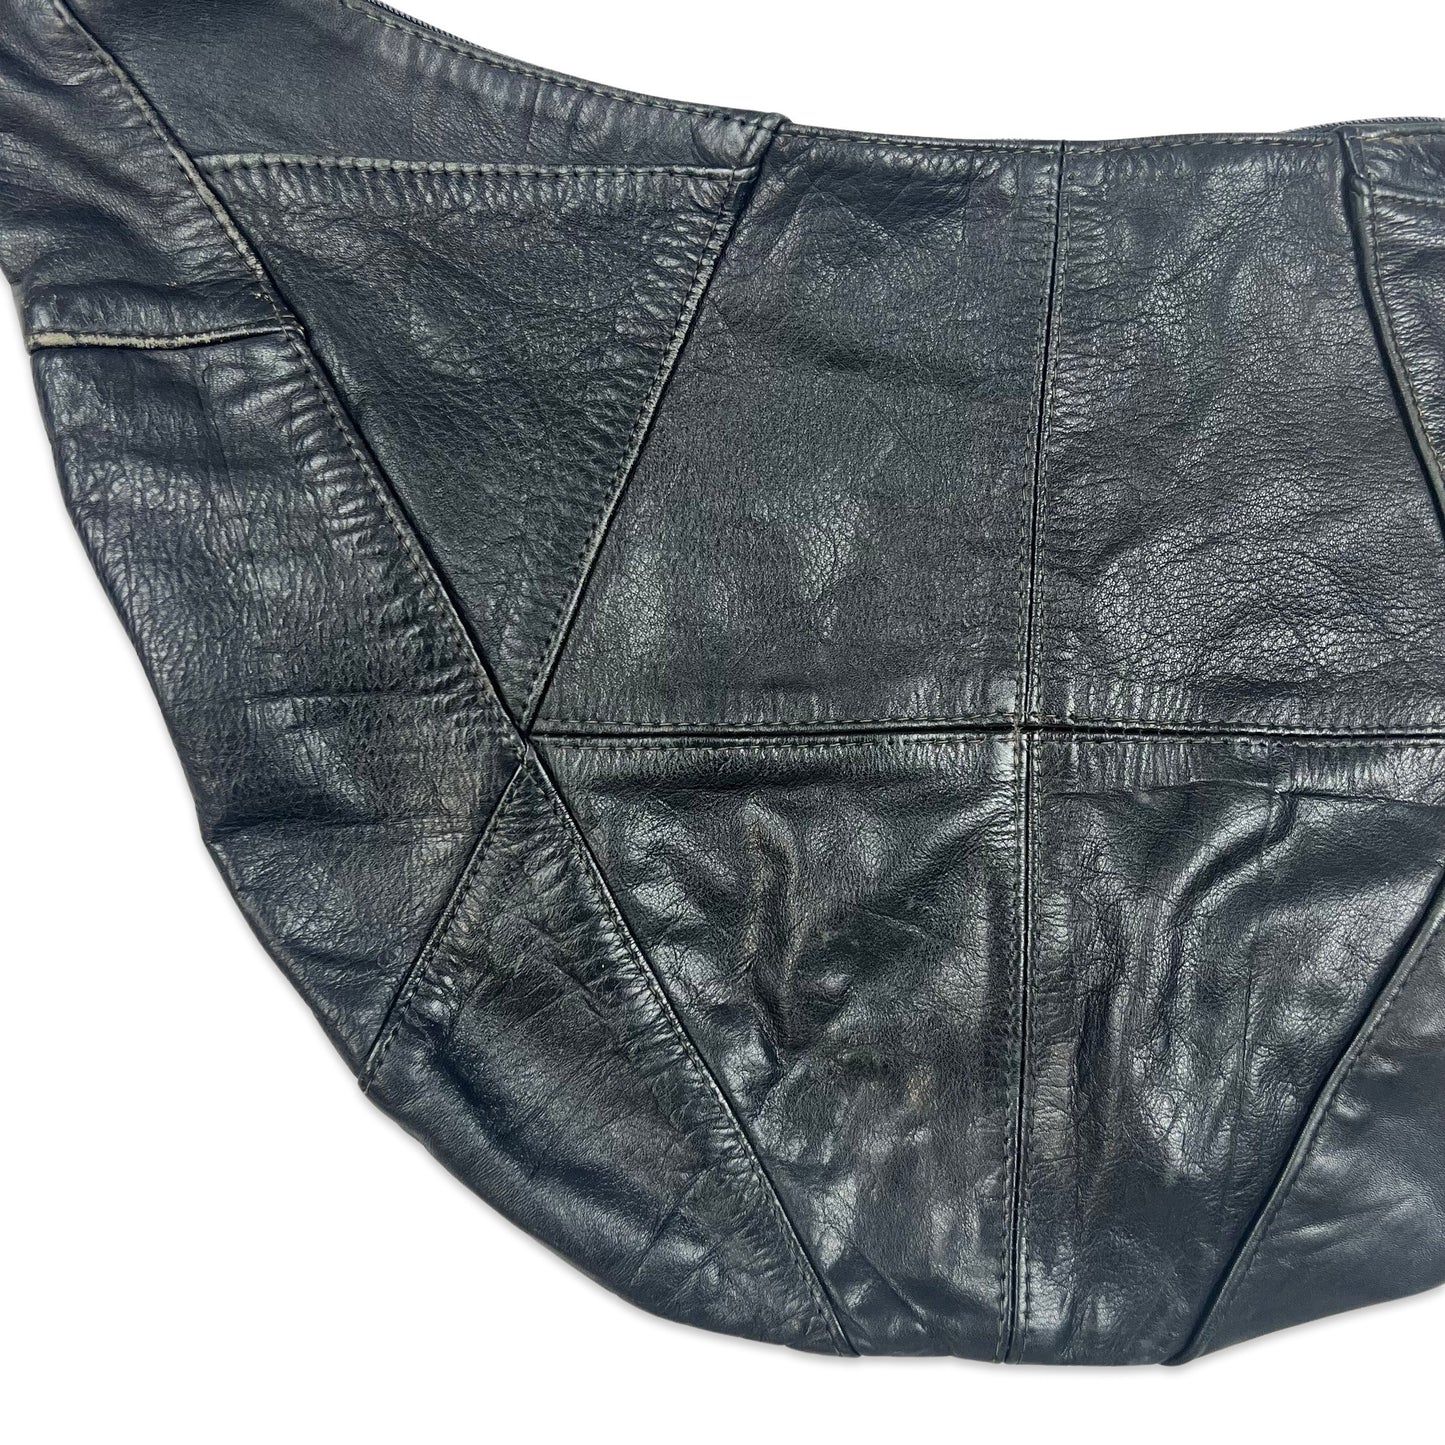 90s Vintage Patchwork Leather Hobo Handbag Black